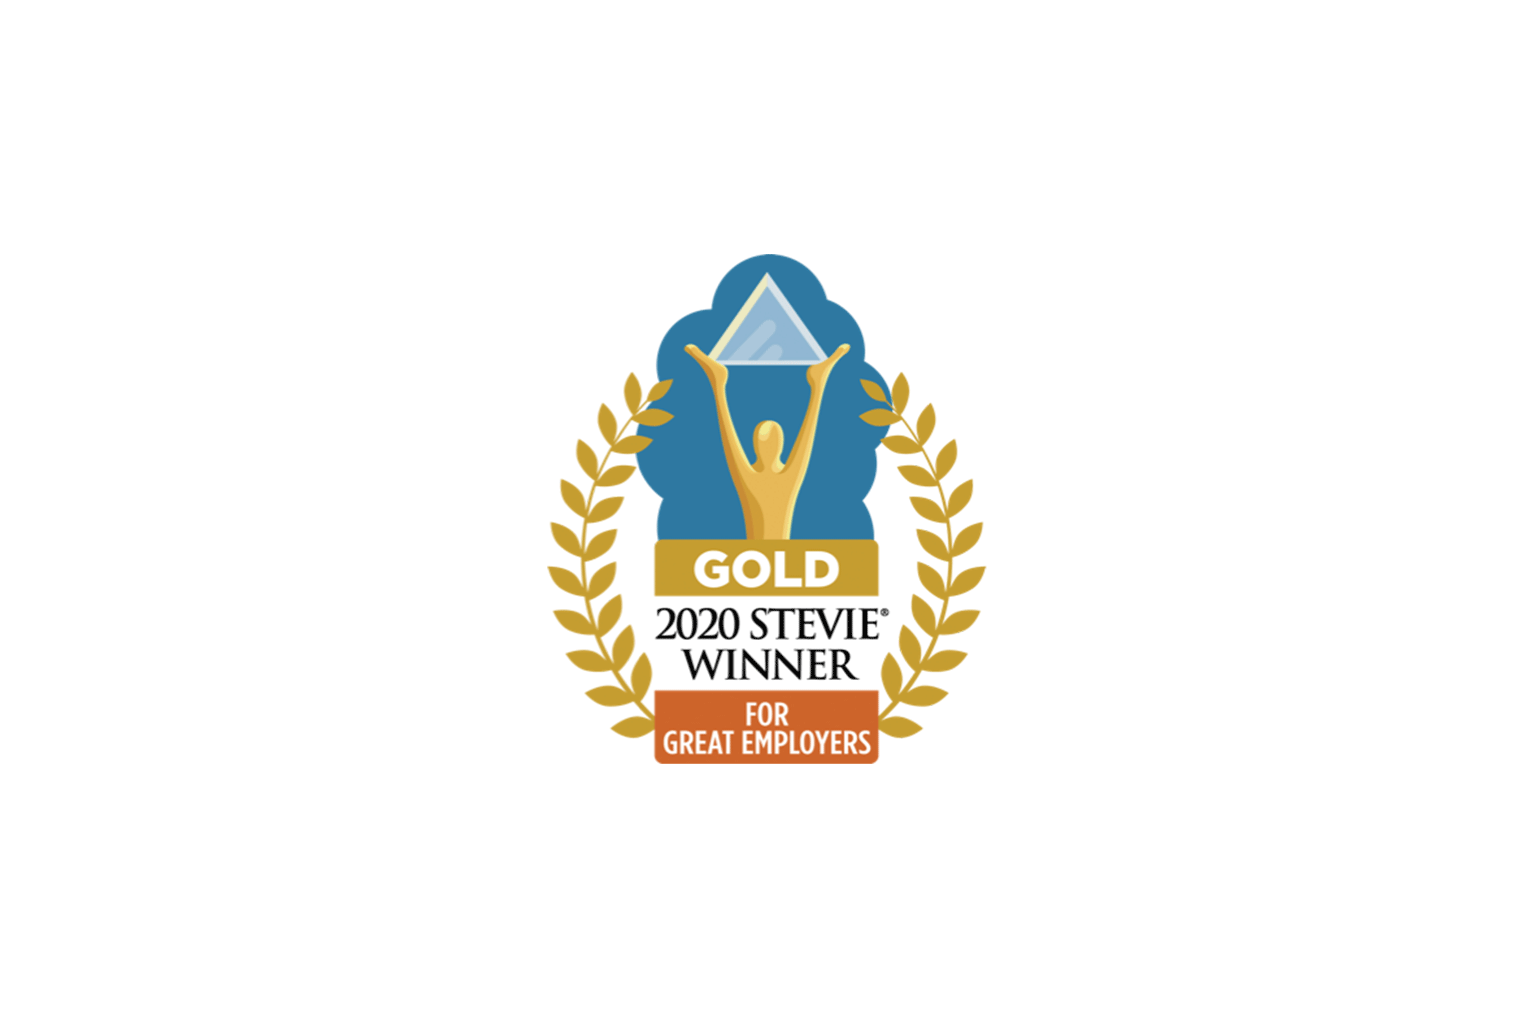 2020 Stevie Winner Gold 